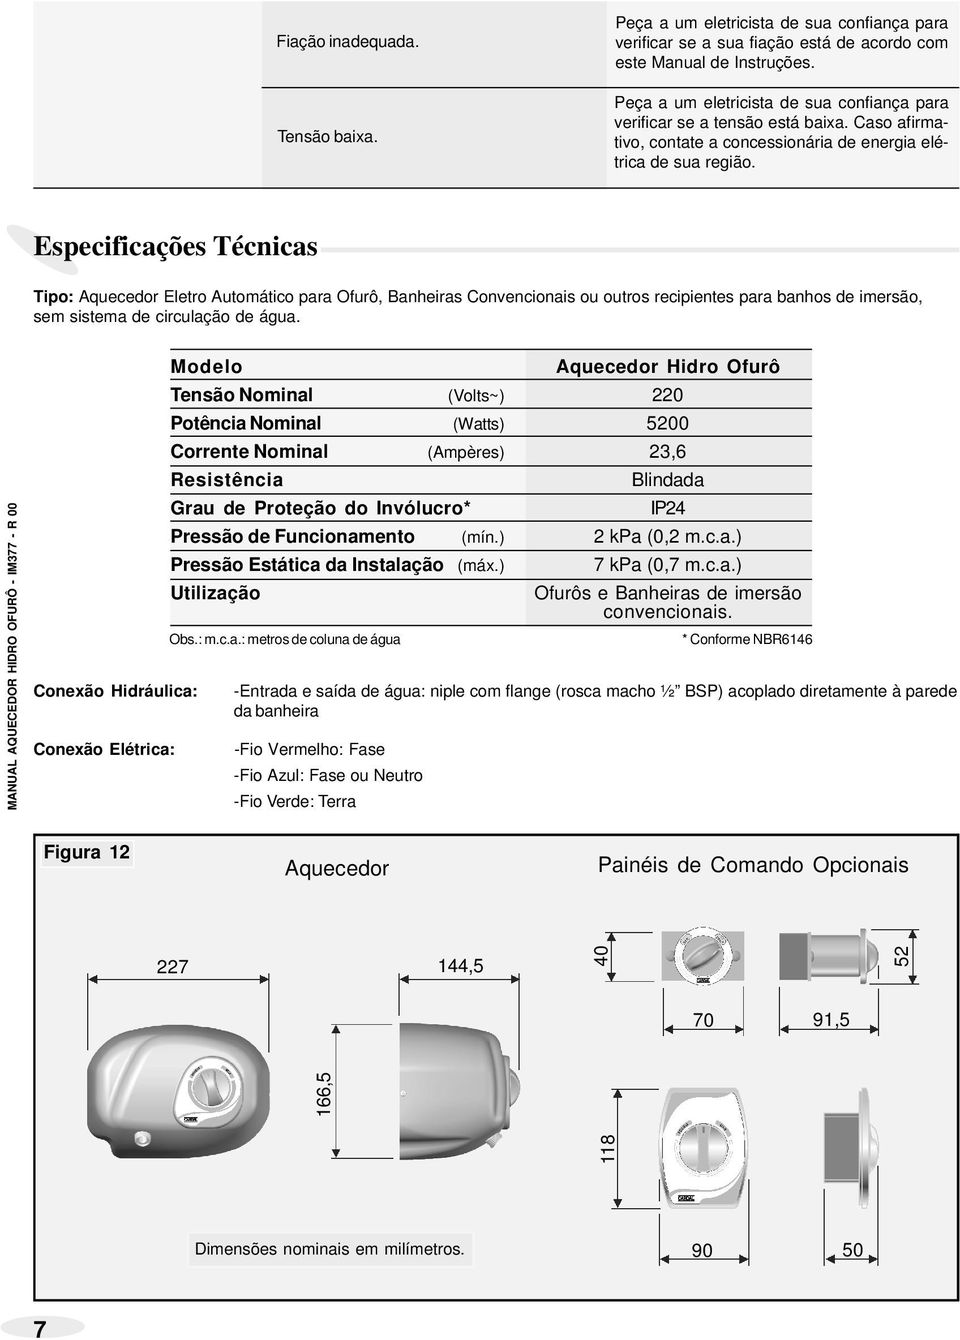 Especificações Técnicas Tipo: Aquecedor Eletro Automático para Ofurô, Banheiras Convencionais ou outros recipientes para banhos imersão, sem sistema circulação água.